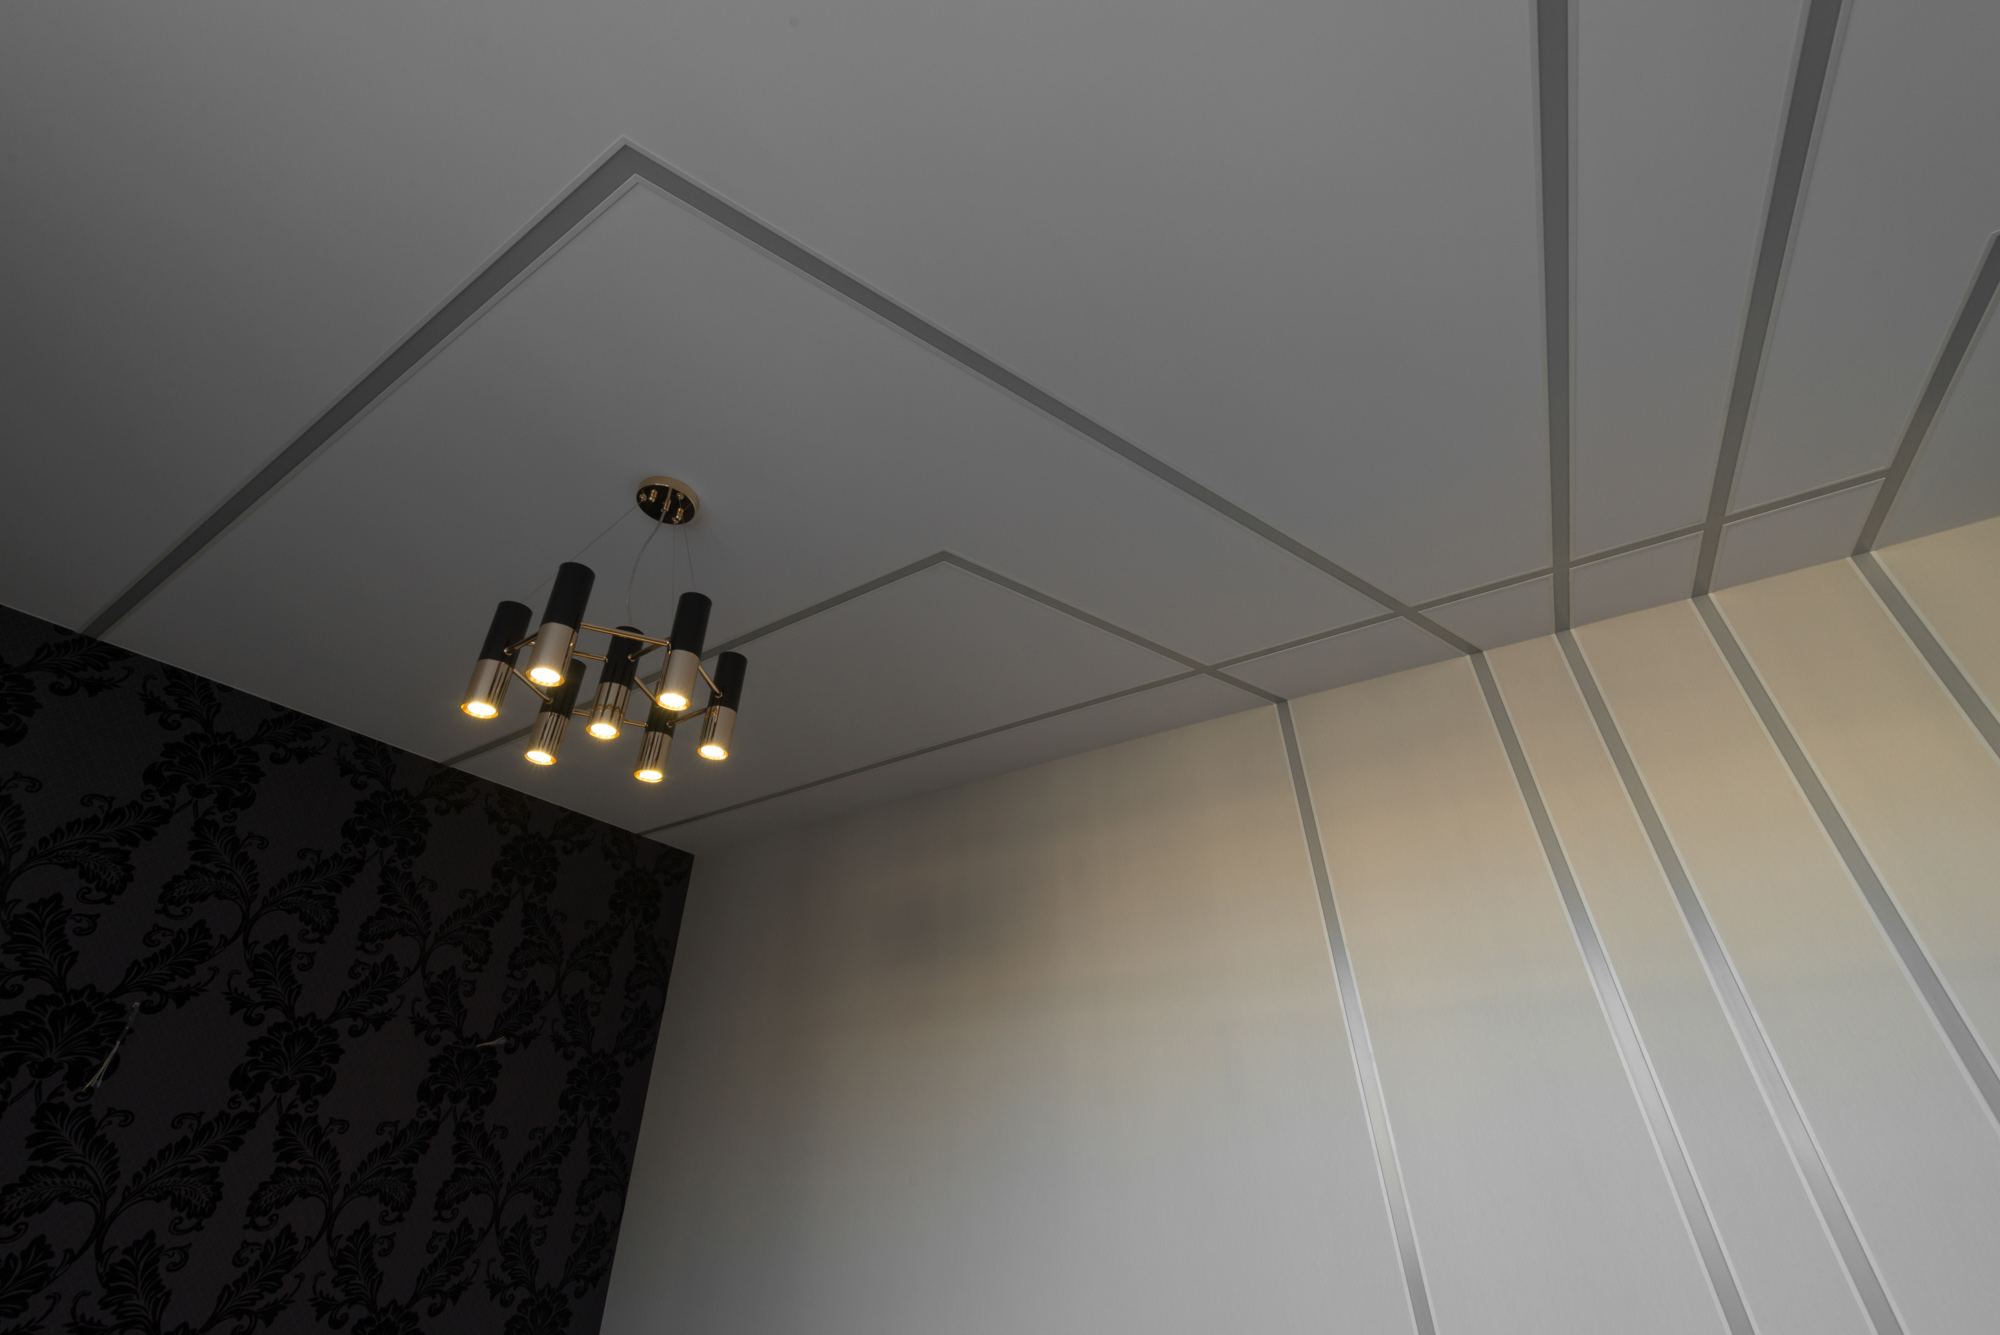 Тканевый натяжной потолок Descor со светящимися линиями, с профилем для светодиодной ленты, потолок в гостиной, в зал, натяжные потолки спб, компания априори, монтаж натяжных потолков, в санкт-петербурге